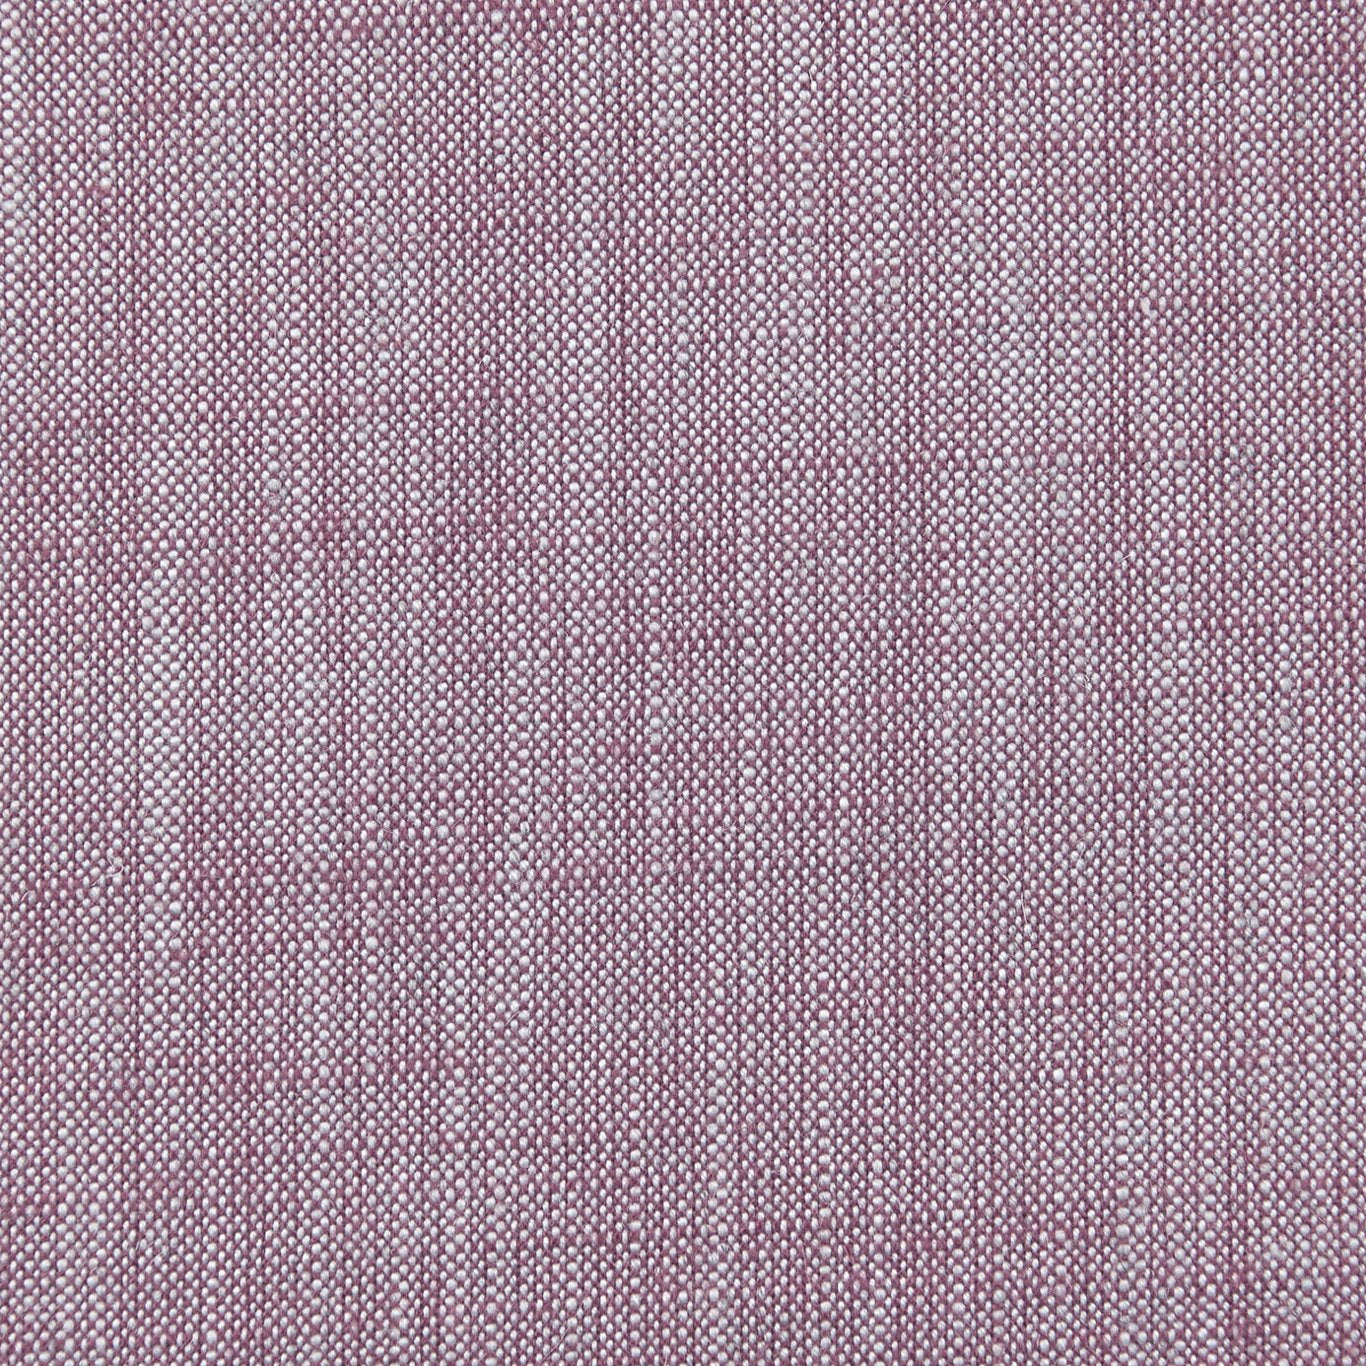 Biarritz Fabric by Clarke & Clarke - F0965/20 - Heather